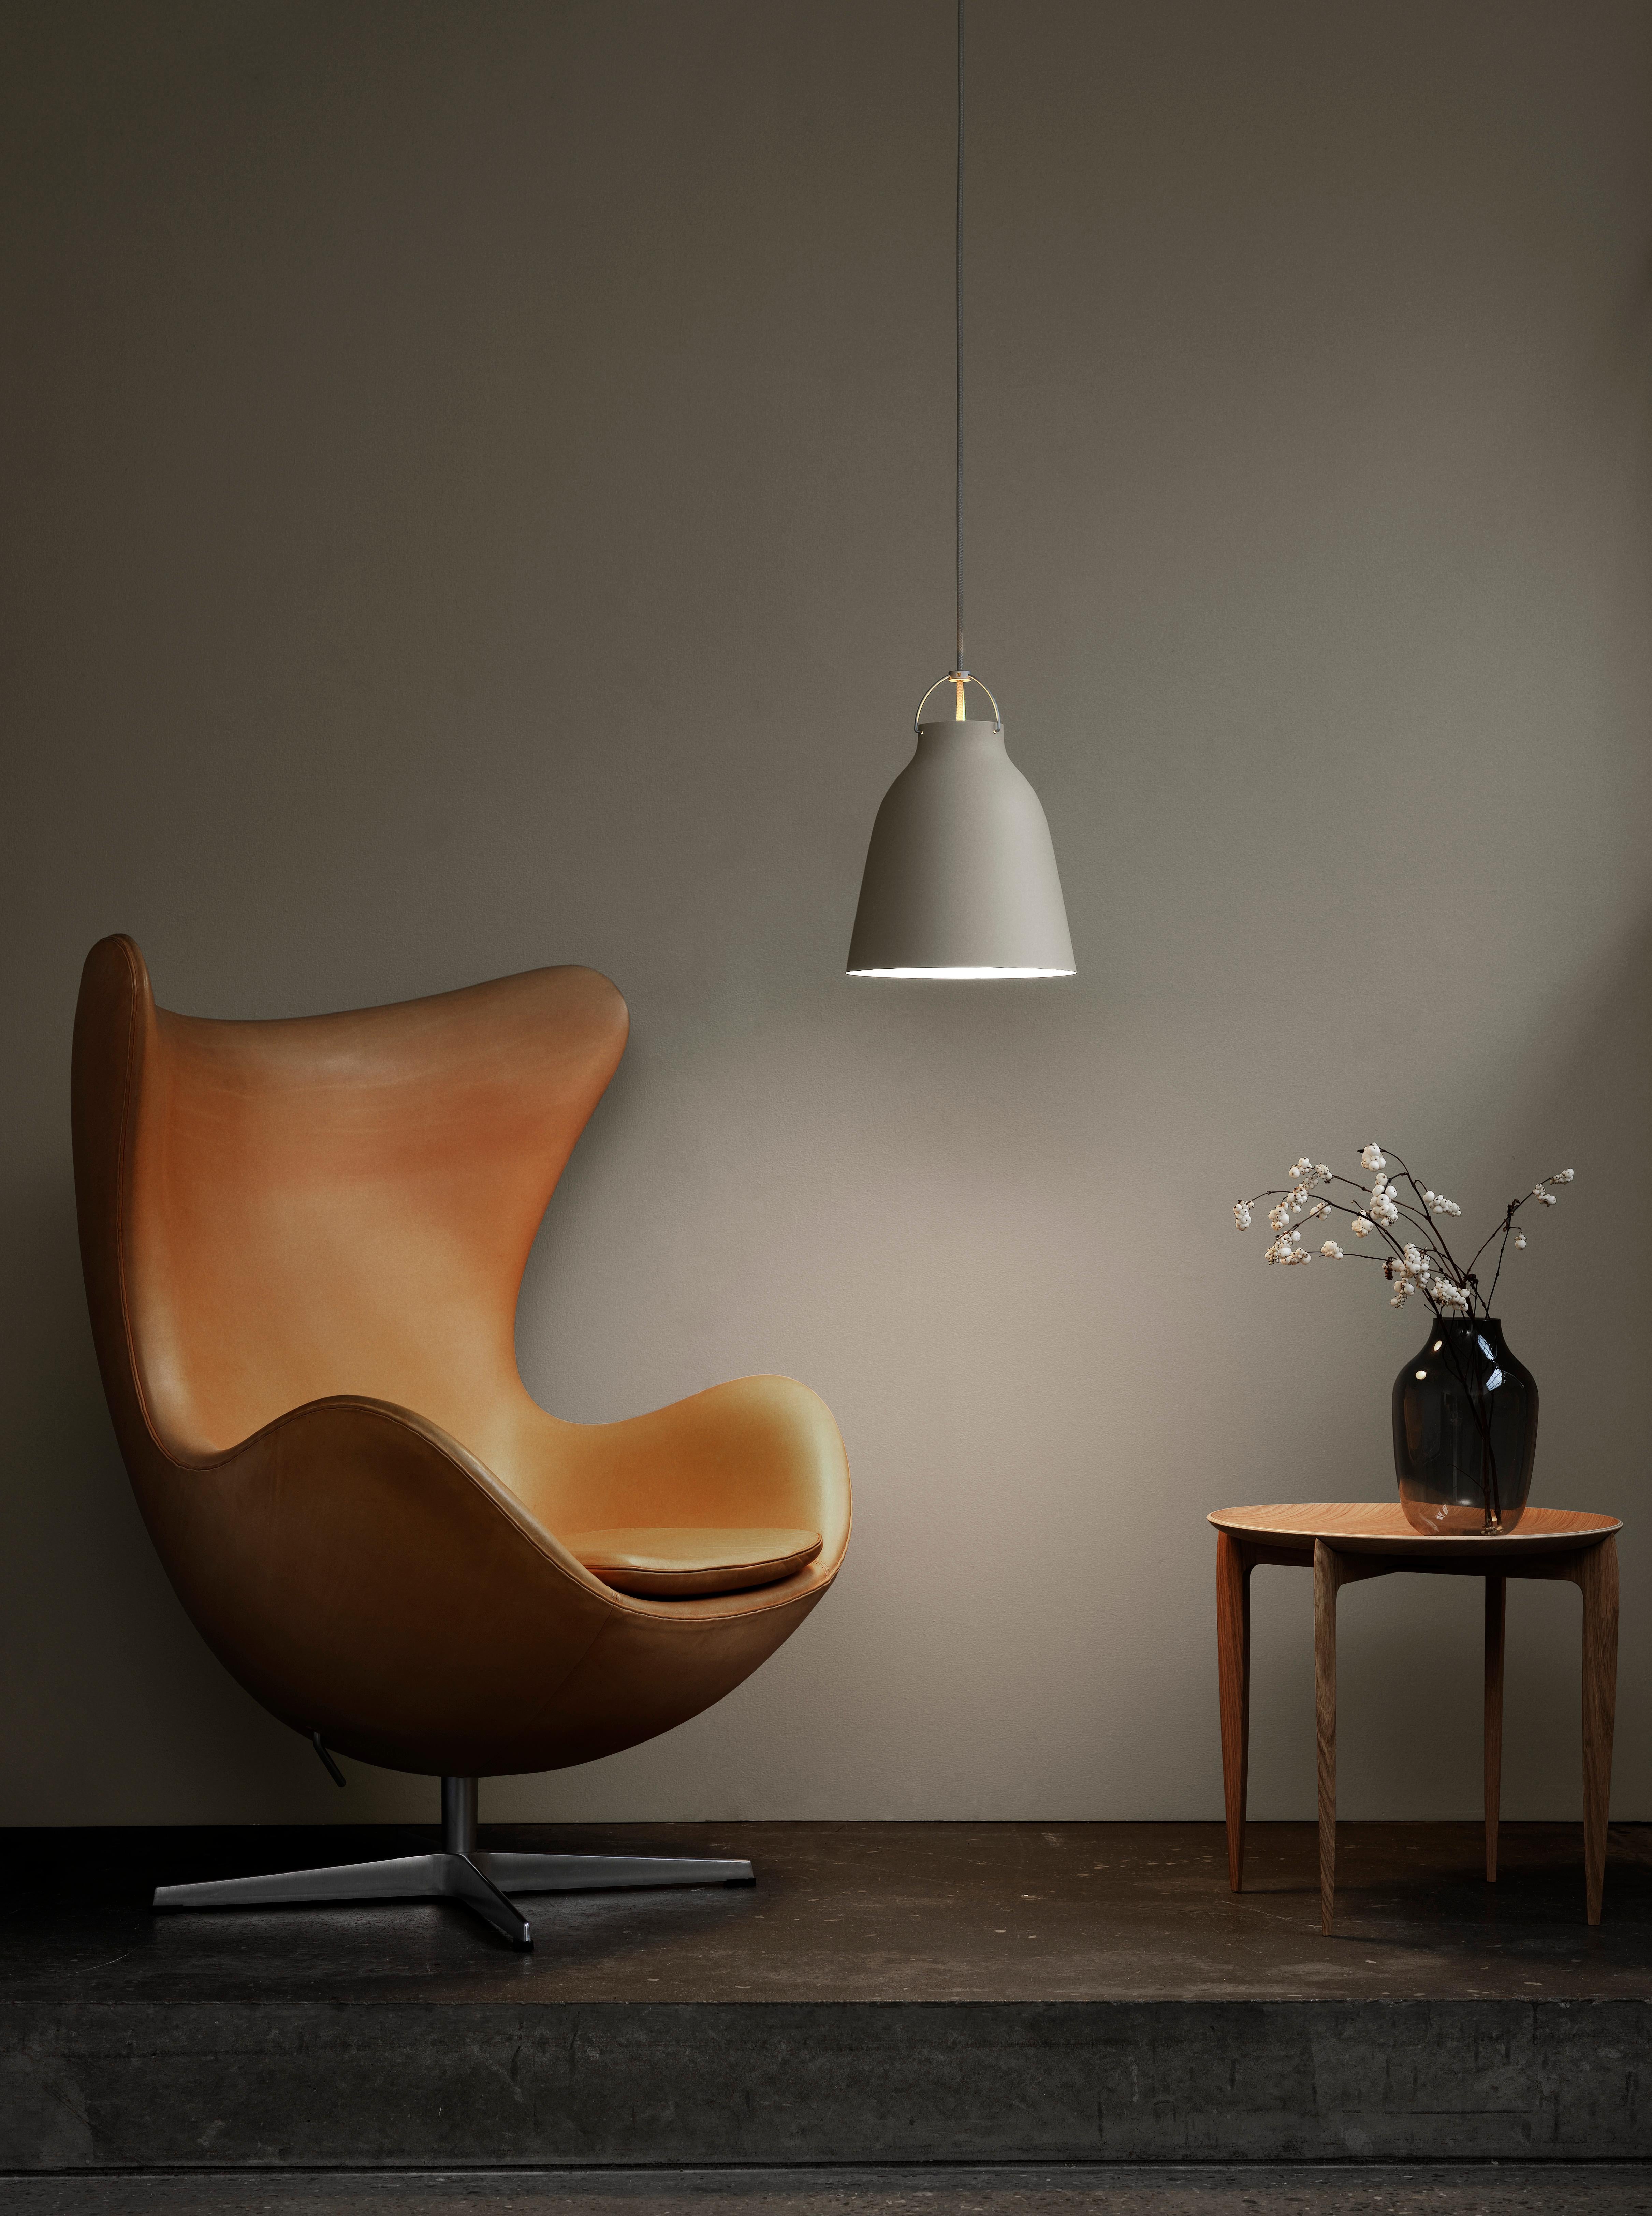 La chaise Egg™ d'Arne Jacobsen est un chef-d'œuvre du design danois. 
Jacobsen a trouvé la forme parfaite de la chaise en expérimentant avec du fil de fer et du plâtre dans son garage. 

Aujourd'hui, le fauteuil à œufs est reconnu dans le monde